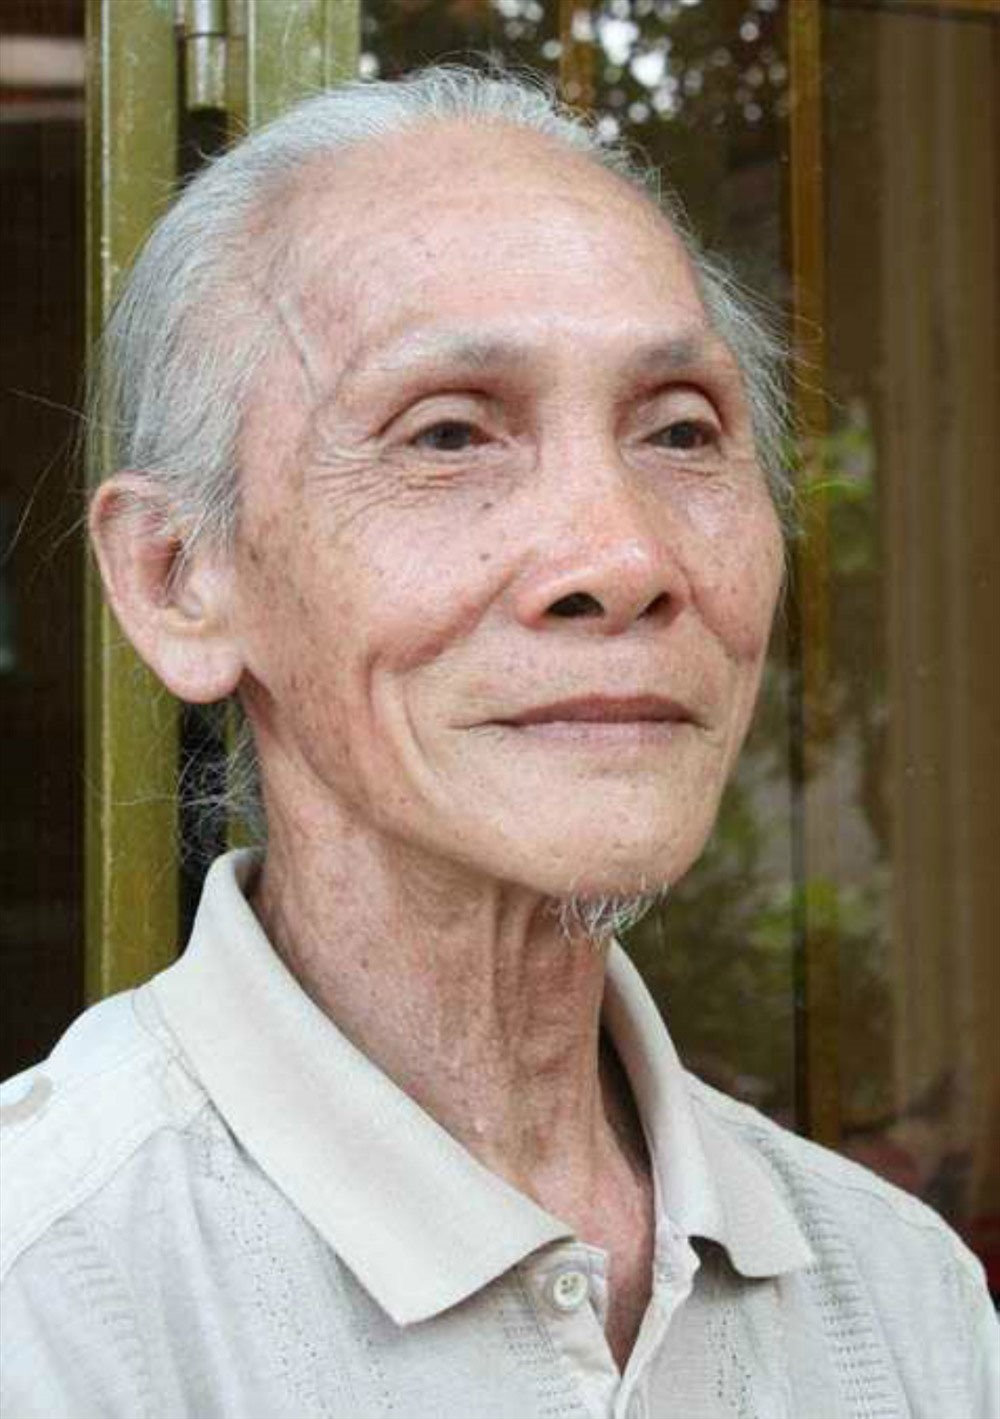 Cuộc sống của ông Thái Hoàng bây giờ còn gần Đạo hơn cái thời hai chục năm ròng ông tu sai pháp.